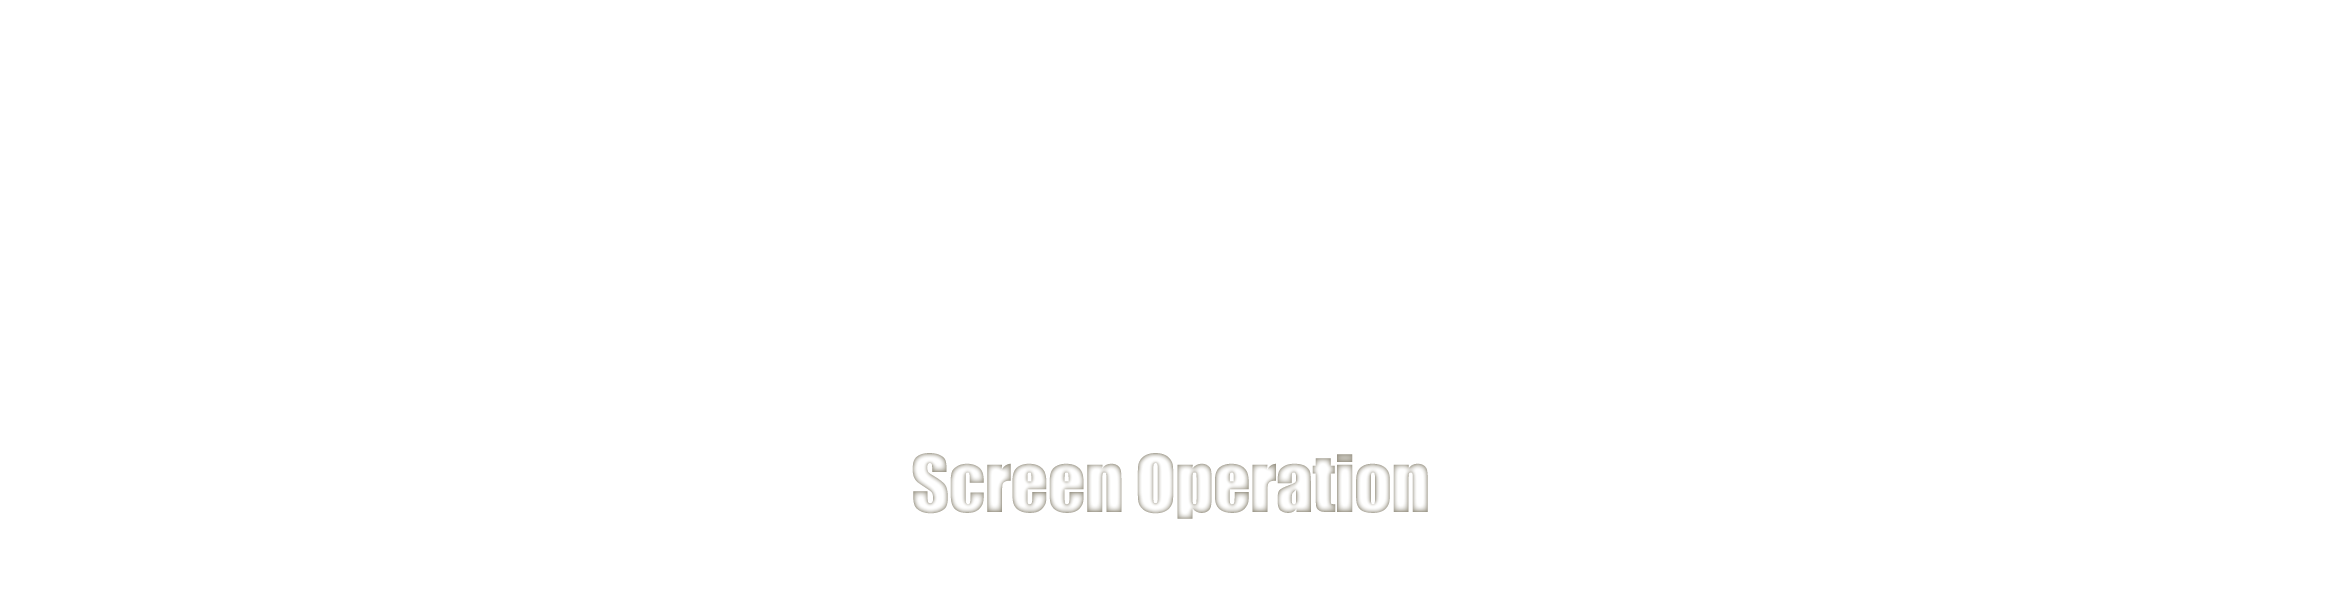 バーチャルツアーの操作画面 Screen Operation